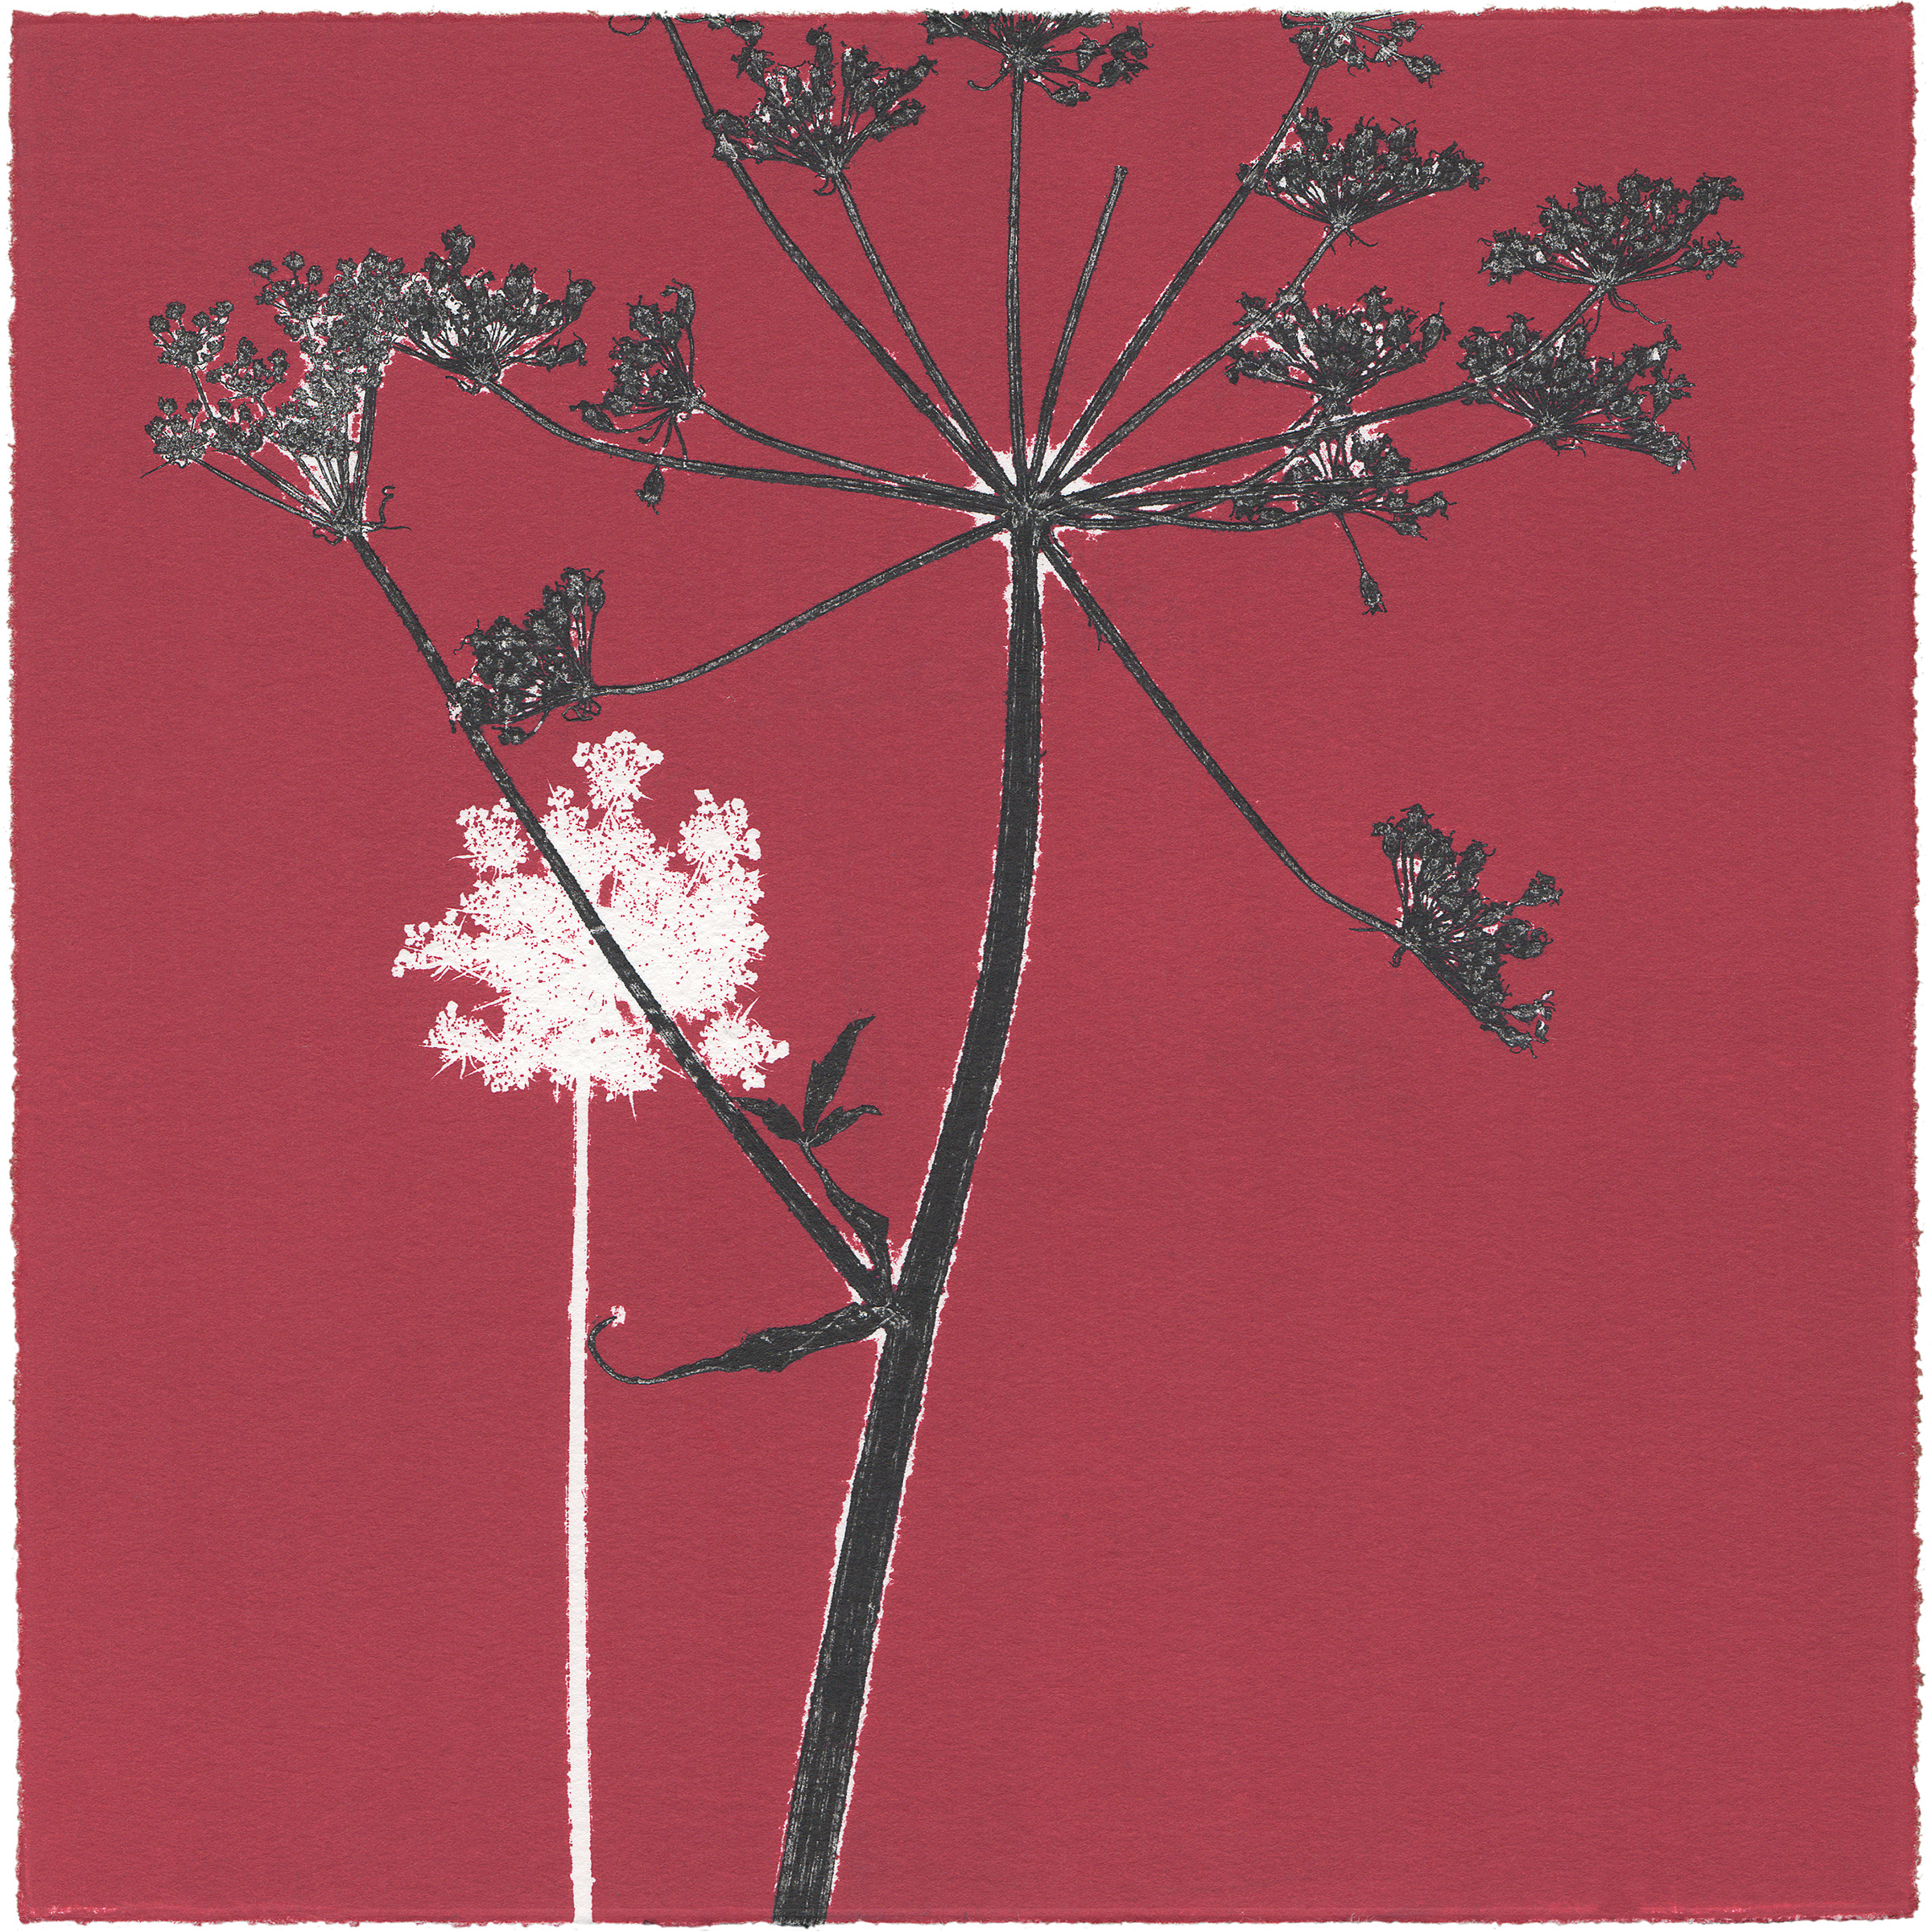 19/60 VIELFALT AM WEGESRAND, 2020 Einzelgrafik einer 60-teiligen Arbeit, Unikat Monoprint von Wildblumen 20 x 20 cm